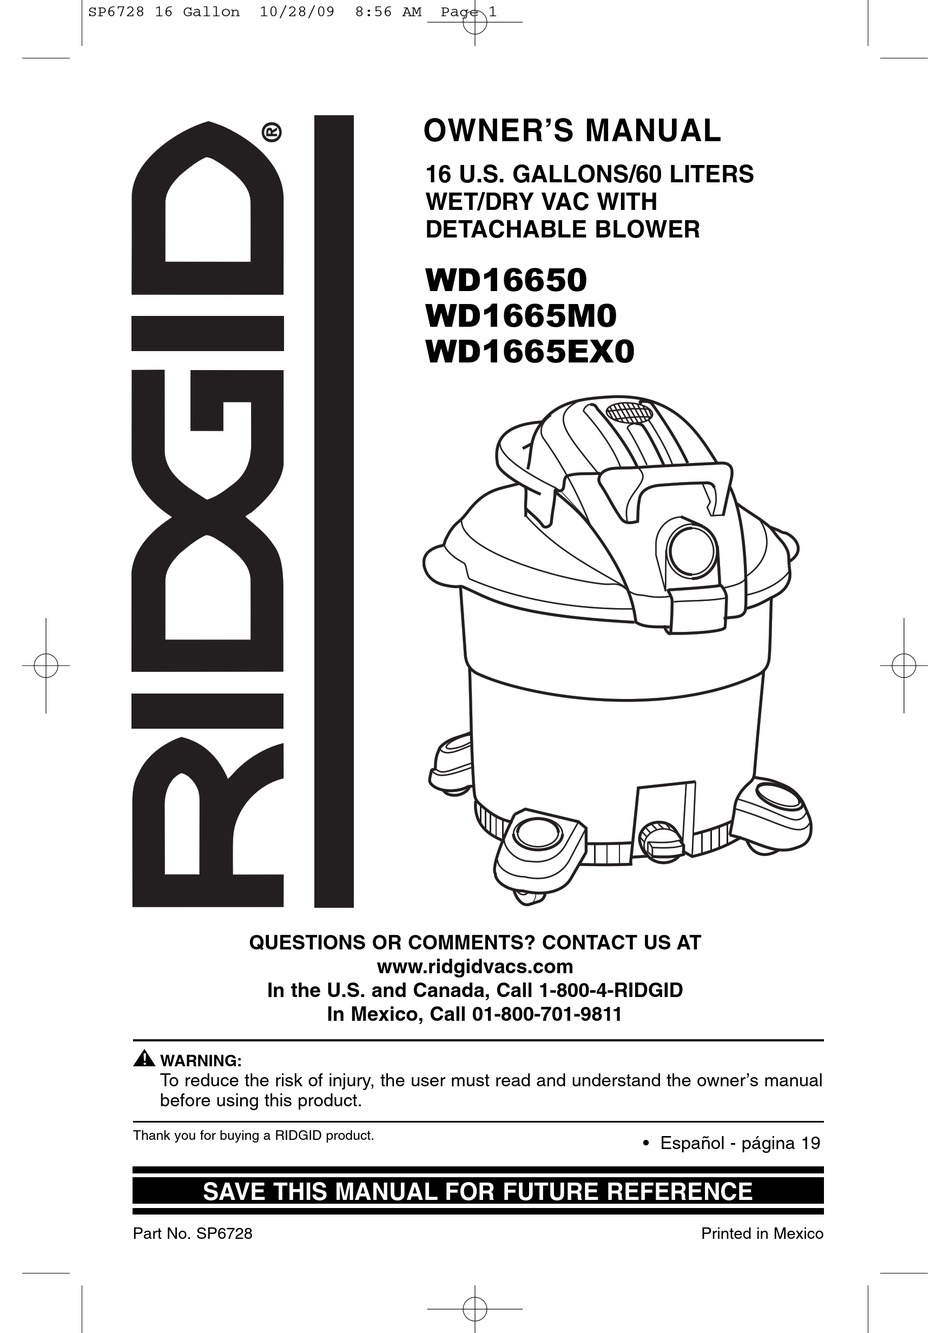 RIDGID WD16650 OWNER'S MANUAL Pdf Download | ManualsLib